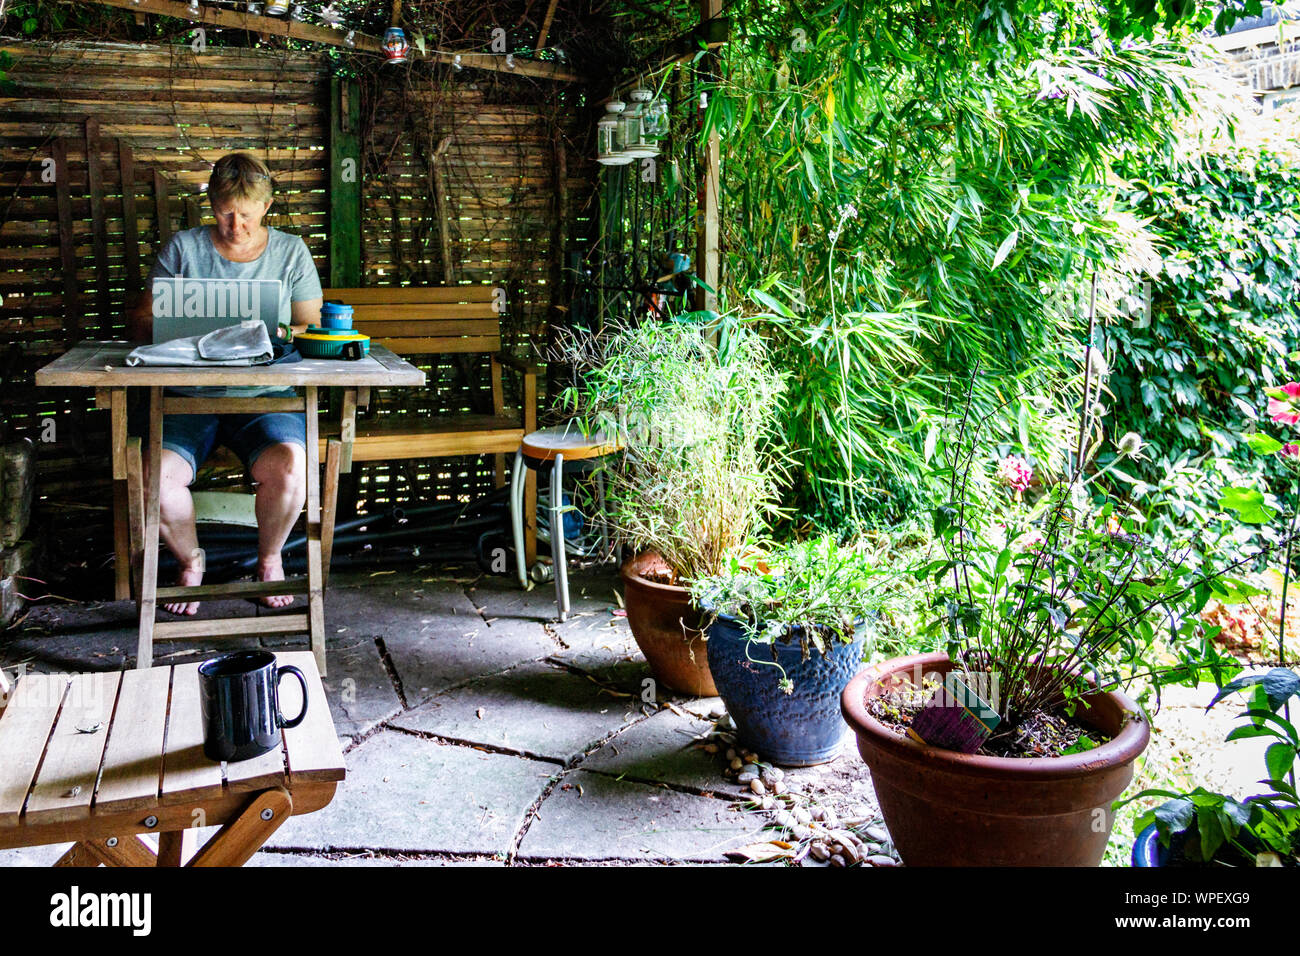 Professionelle Frau zu Hause arbeiten, profitieren von heißem Wetter unter einem Garten pergola zu sitzen, nördlich von London, Großbritannien Stockfoto